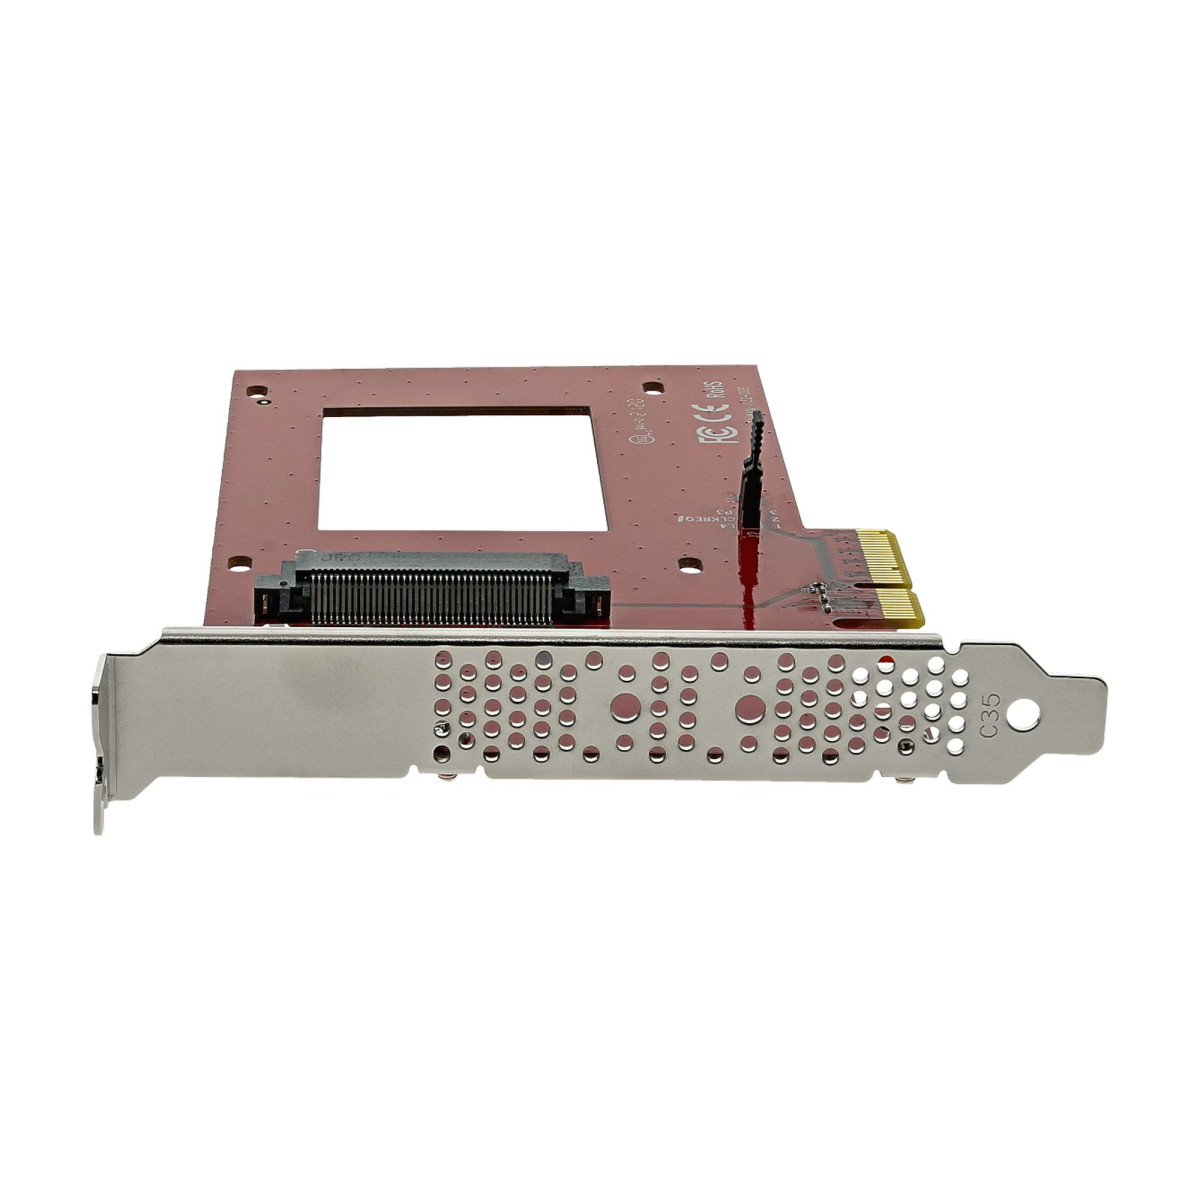 U.2 to PCIe Adapter - 2.5 U.2 NVMe SSD